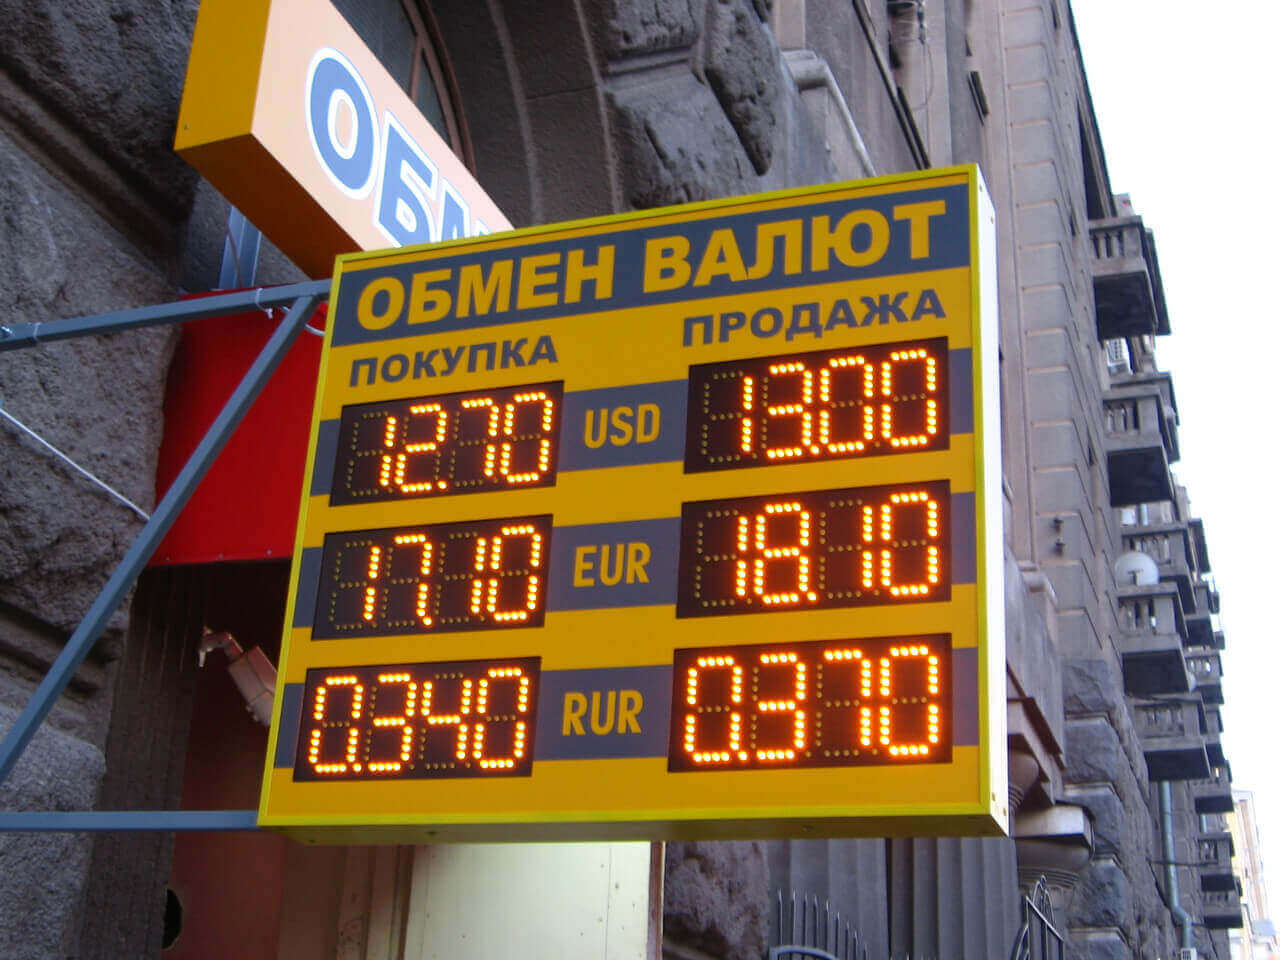 Курсы валют в Украине. Обмен Гривны, Доллара, Рубля | vse-credity.com.ua ©